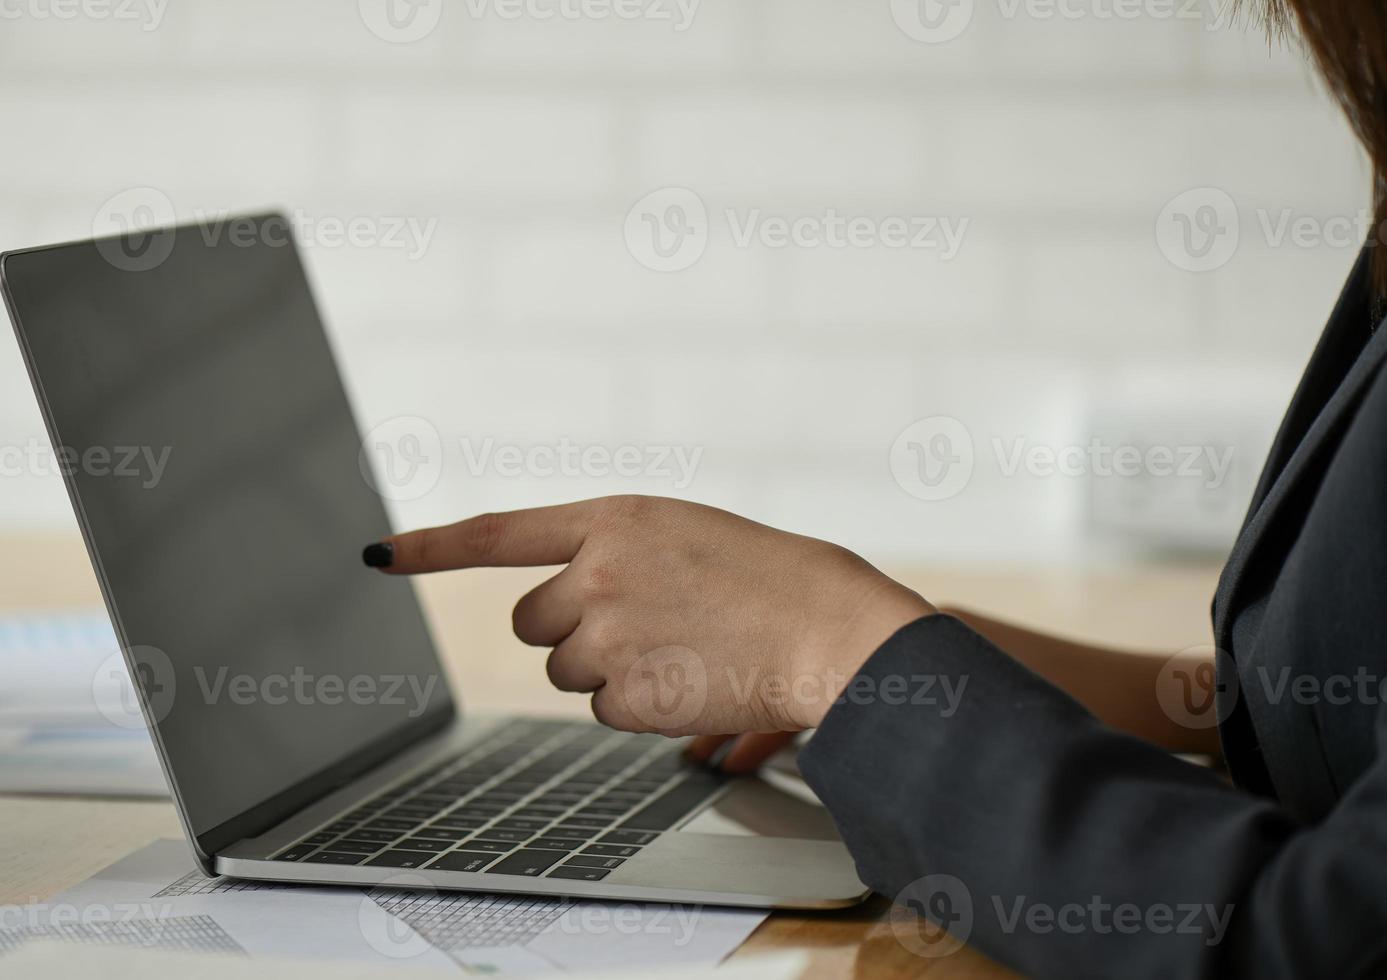 funcionárias estão usando um laptop na mesa do escritório. foto